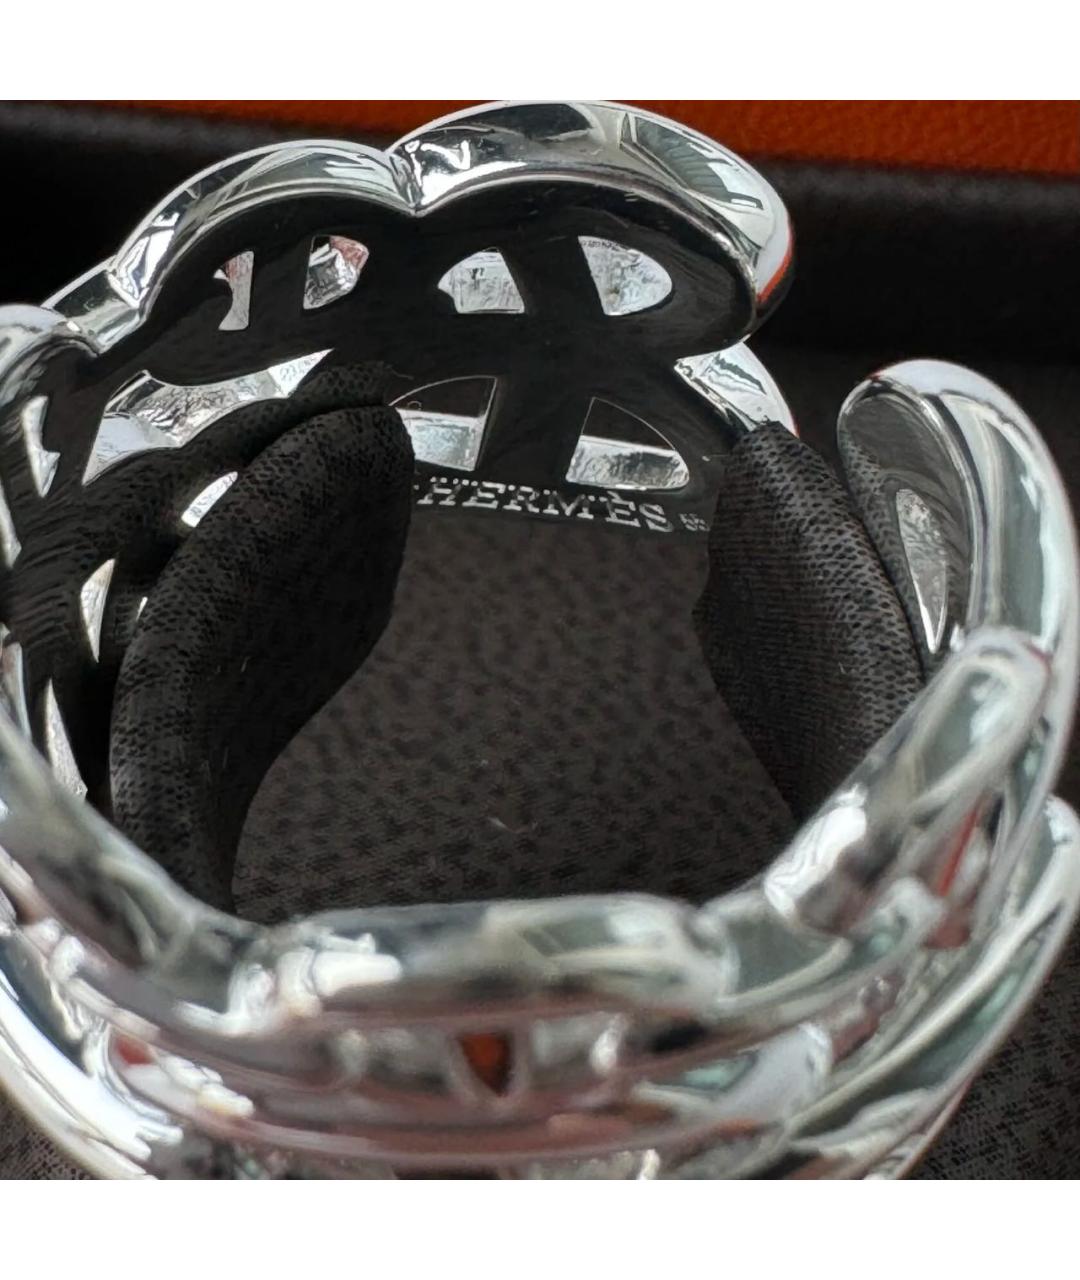 HERMES PRE-OWNED Серебряное серебряное кольцо, фото 5